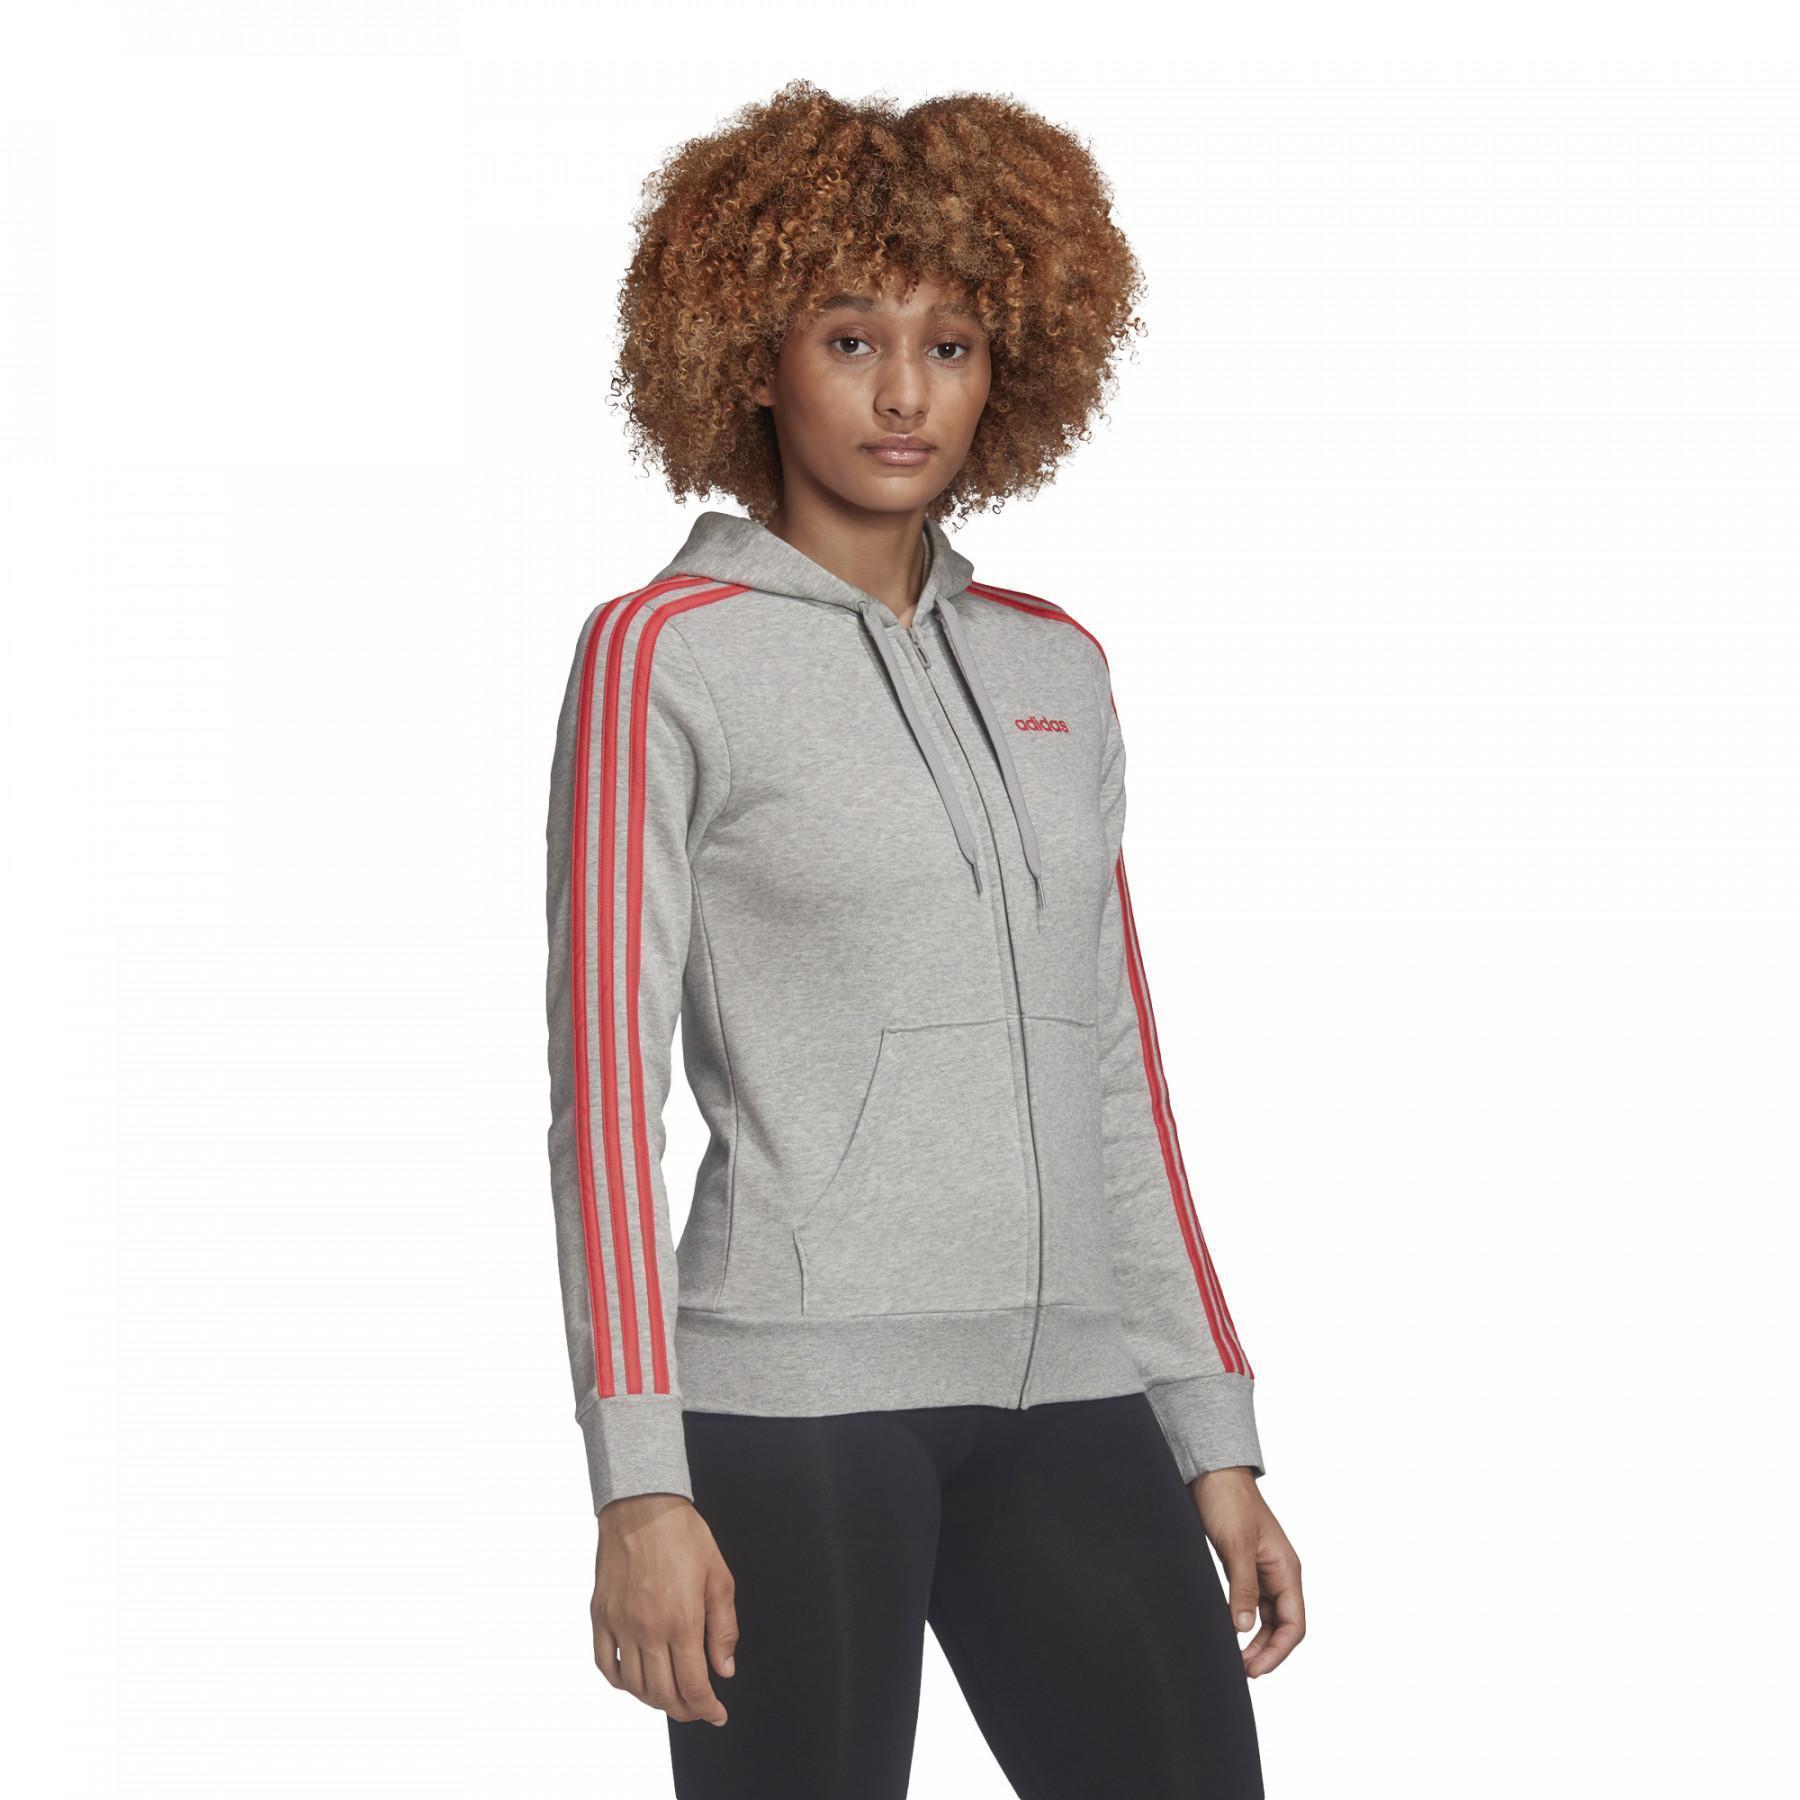 Damen-Sweatshirt adidas Essentials 3-Stripes